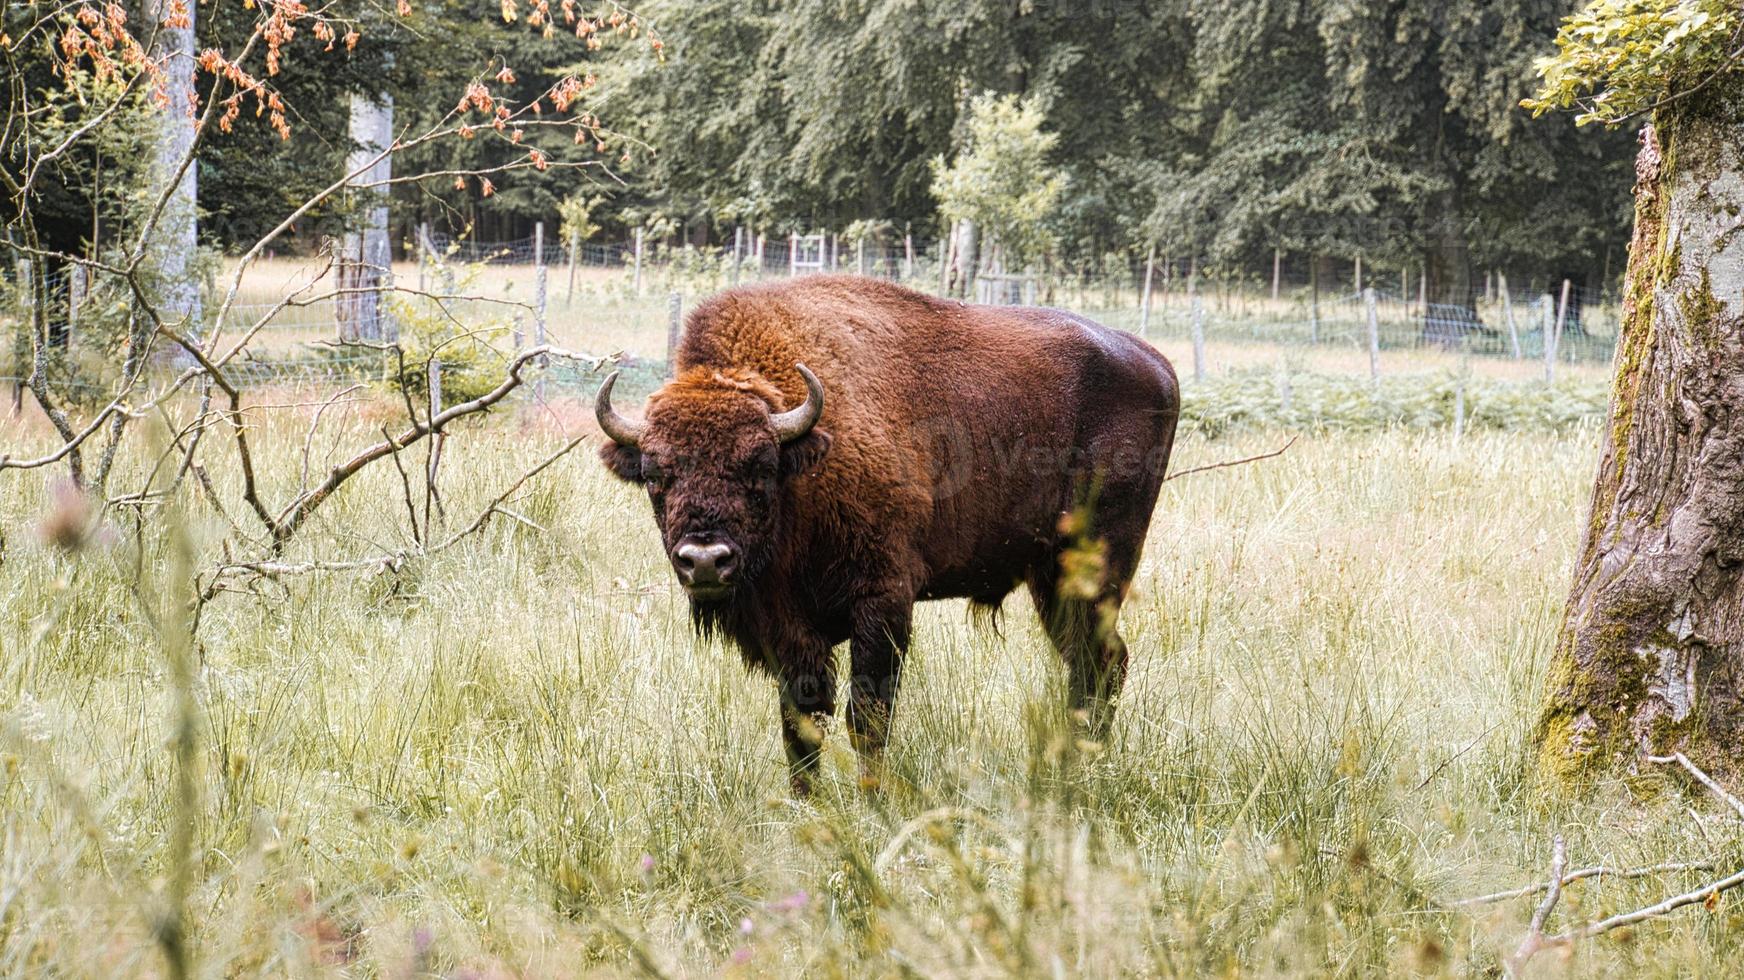 bisonte en el abrevadero enfriándose. gran mamífero de color marrón con grandes cuernos. foto